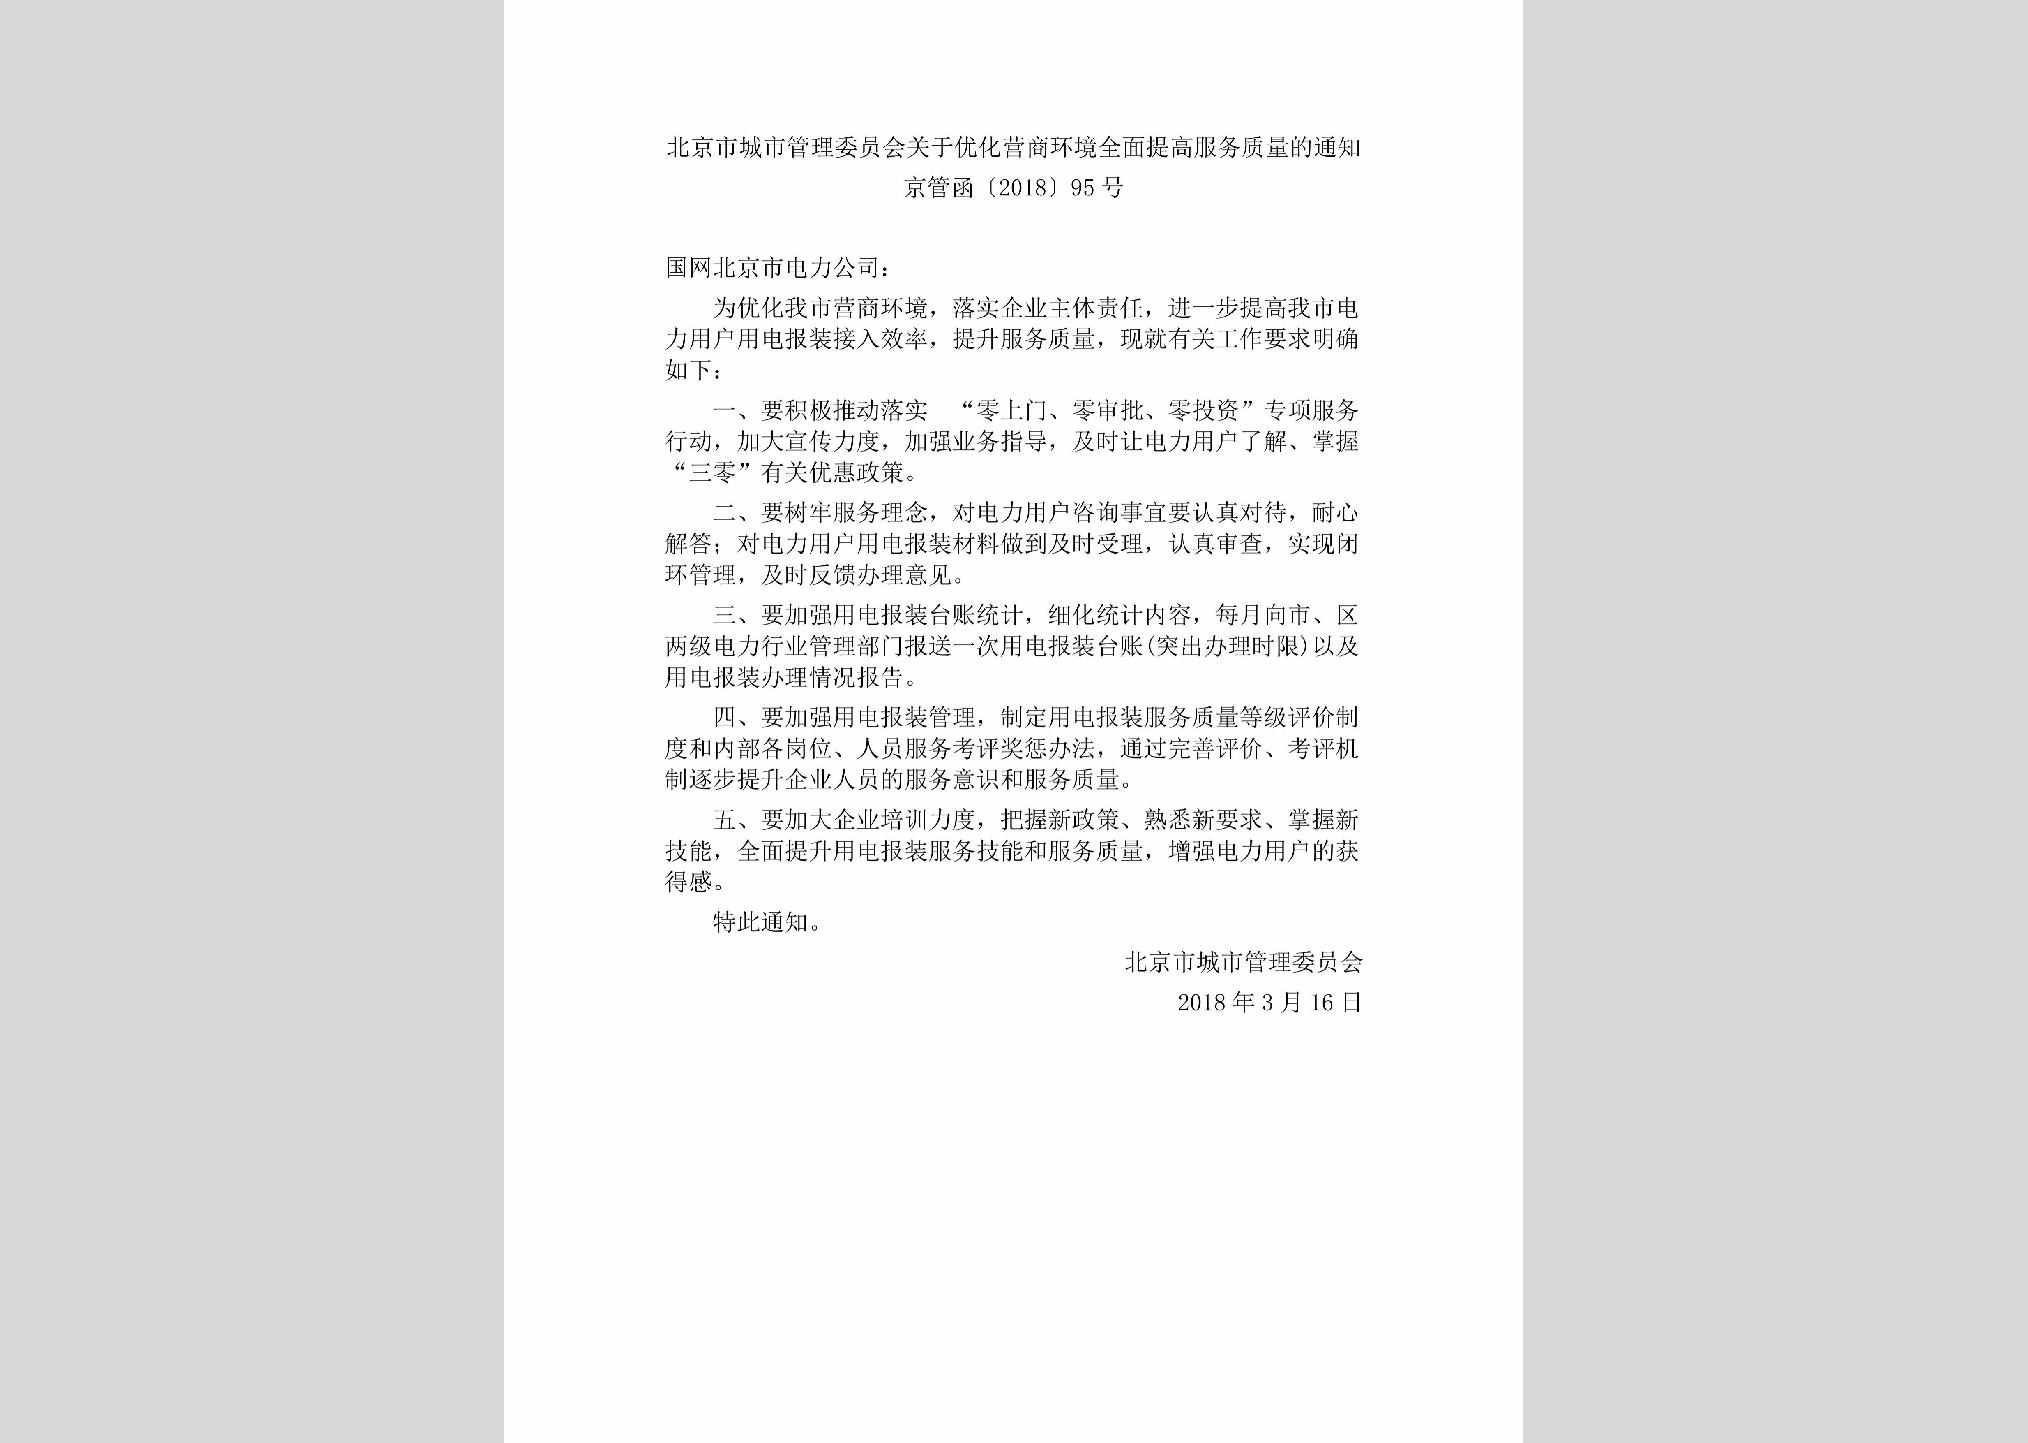 京管函[2018]95号：北京市城市管理委员会关于优化营商环境全面提高服务质量的通知